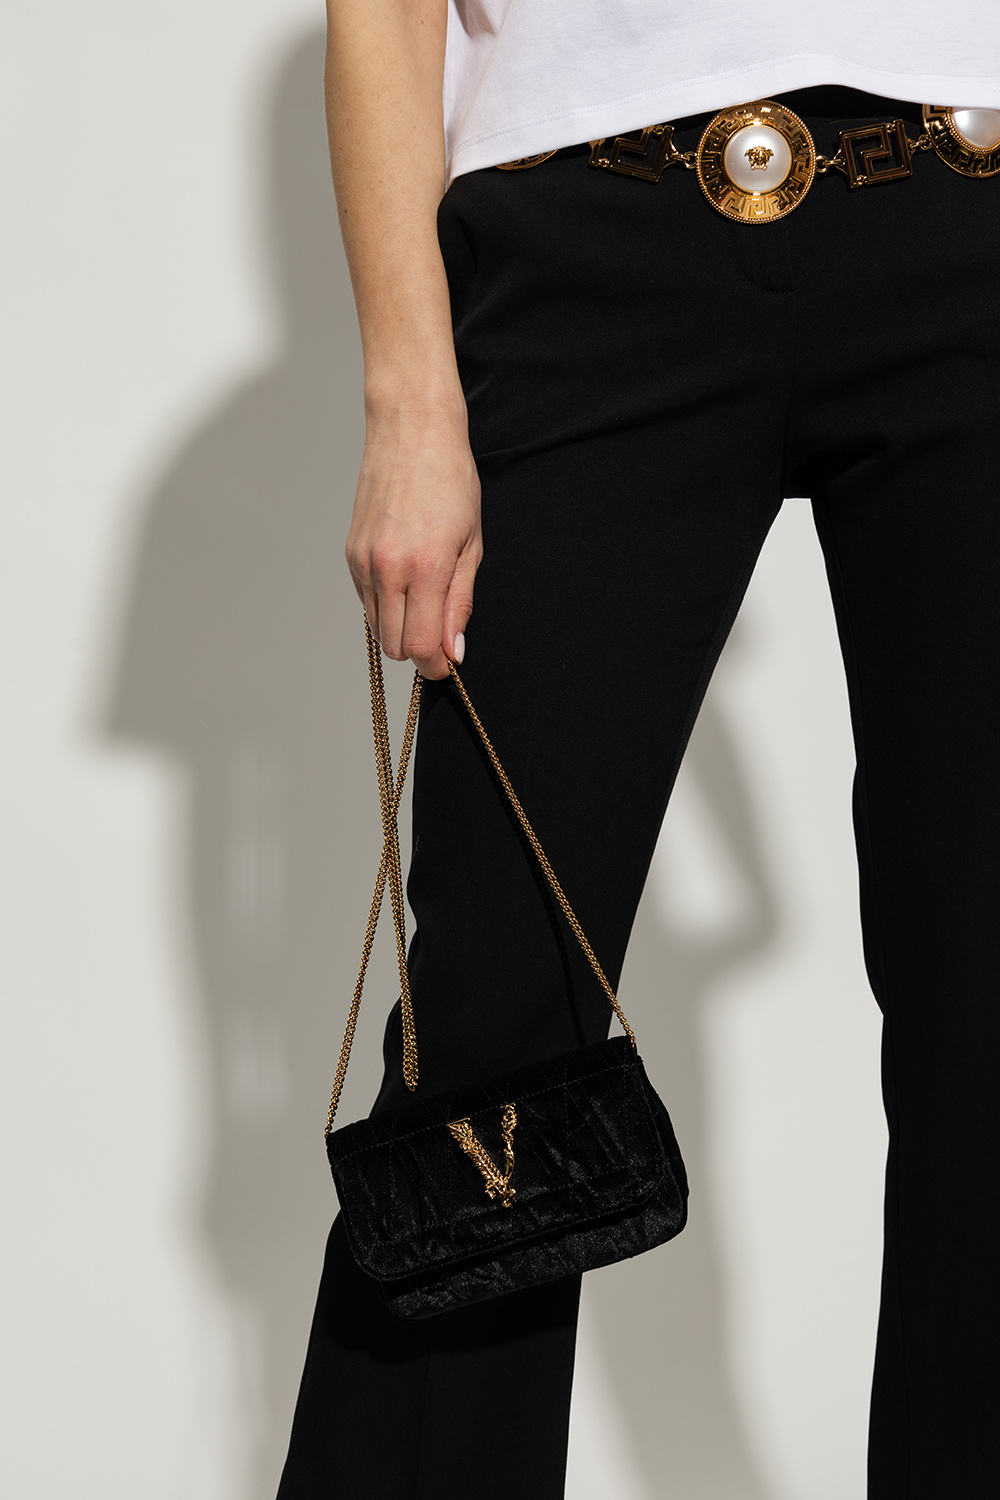 Versace, Bags, Versace Virtus Mini Bag